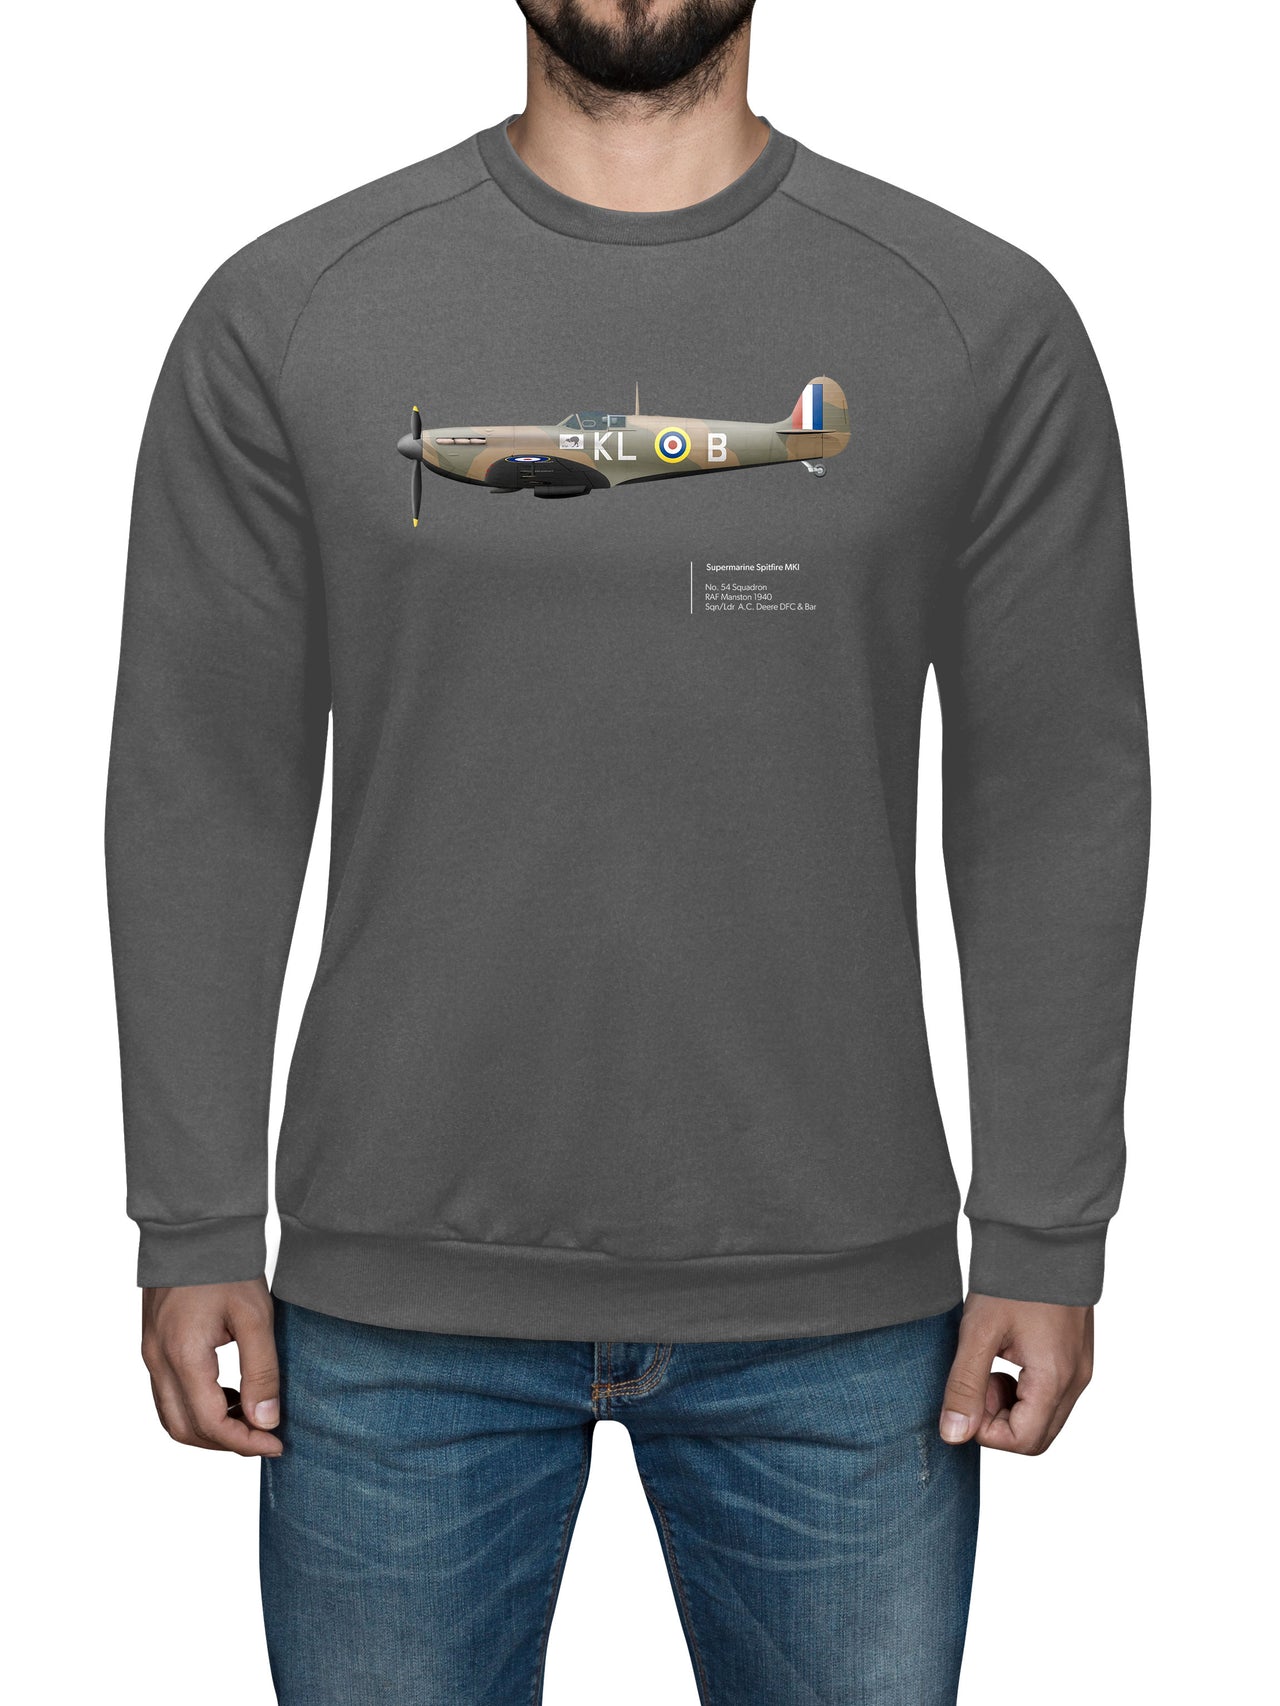 Spitfire 54SQN - Sweat Shirt